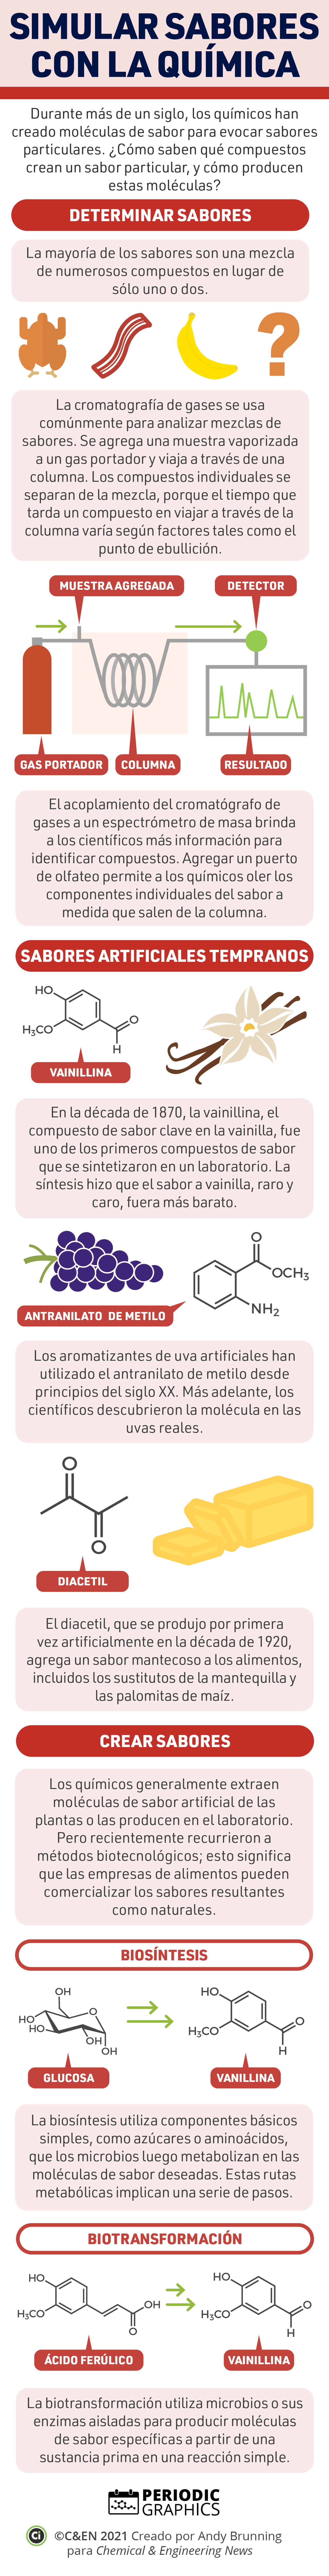 Infografias Periodicas Simular Sabores Con La Química